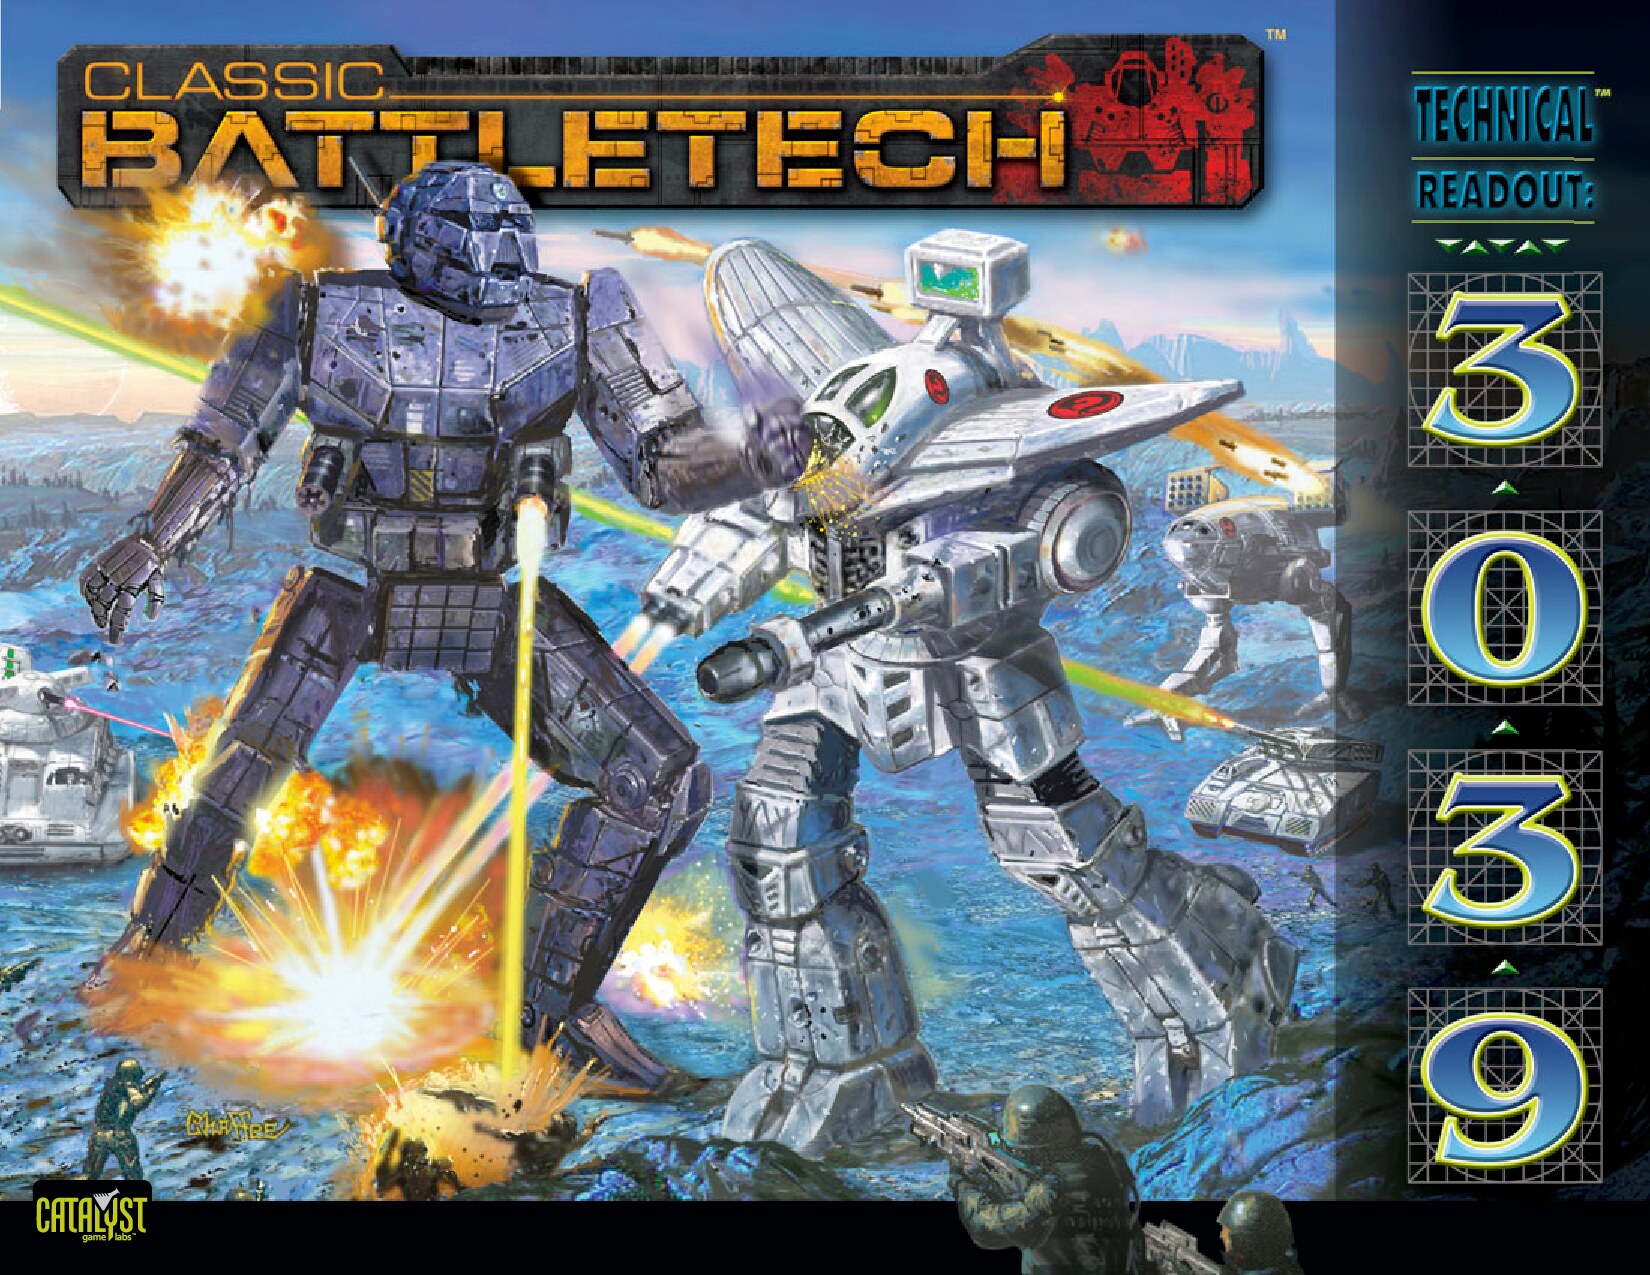 Classic BattleTech Technical Readout: 3039